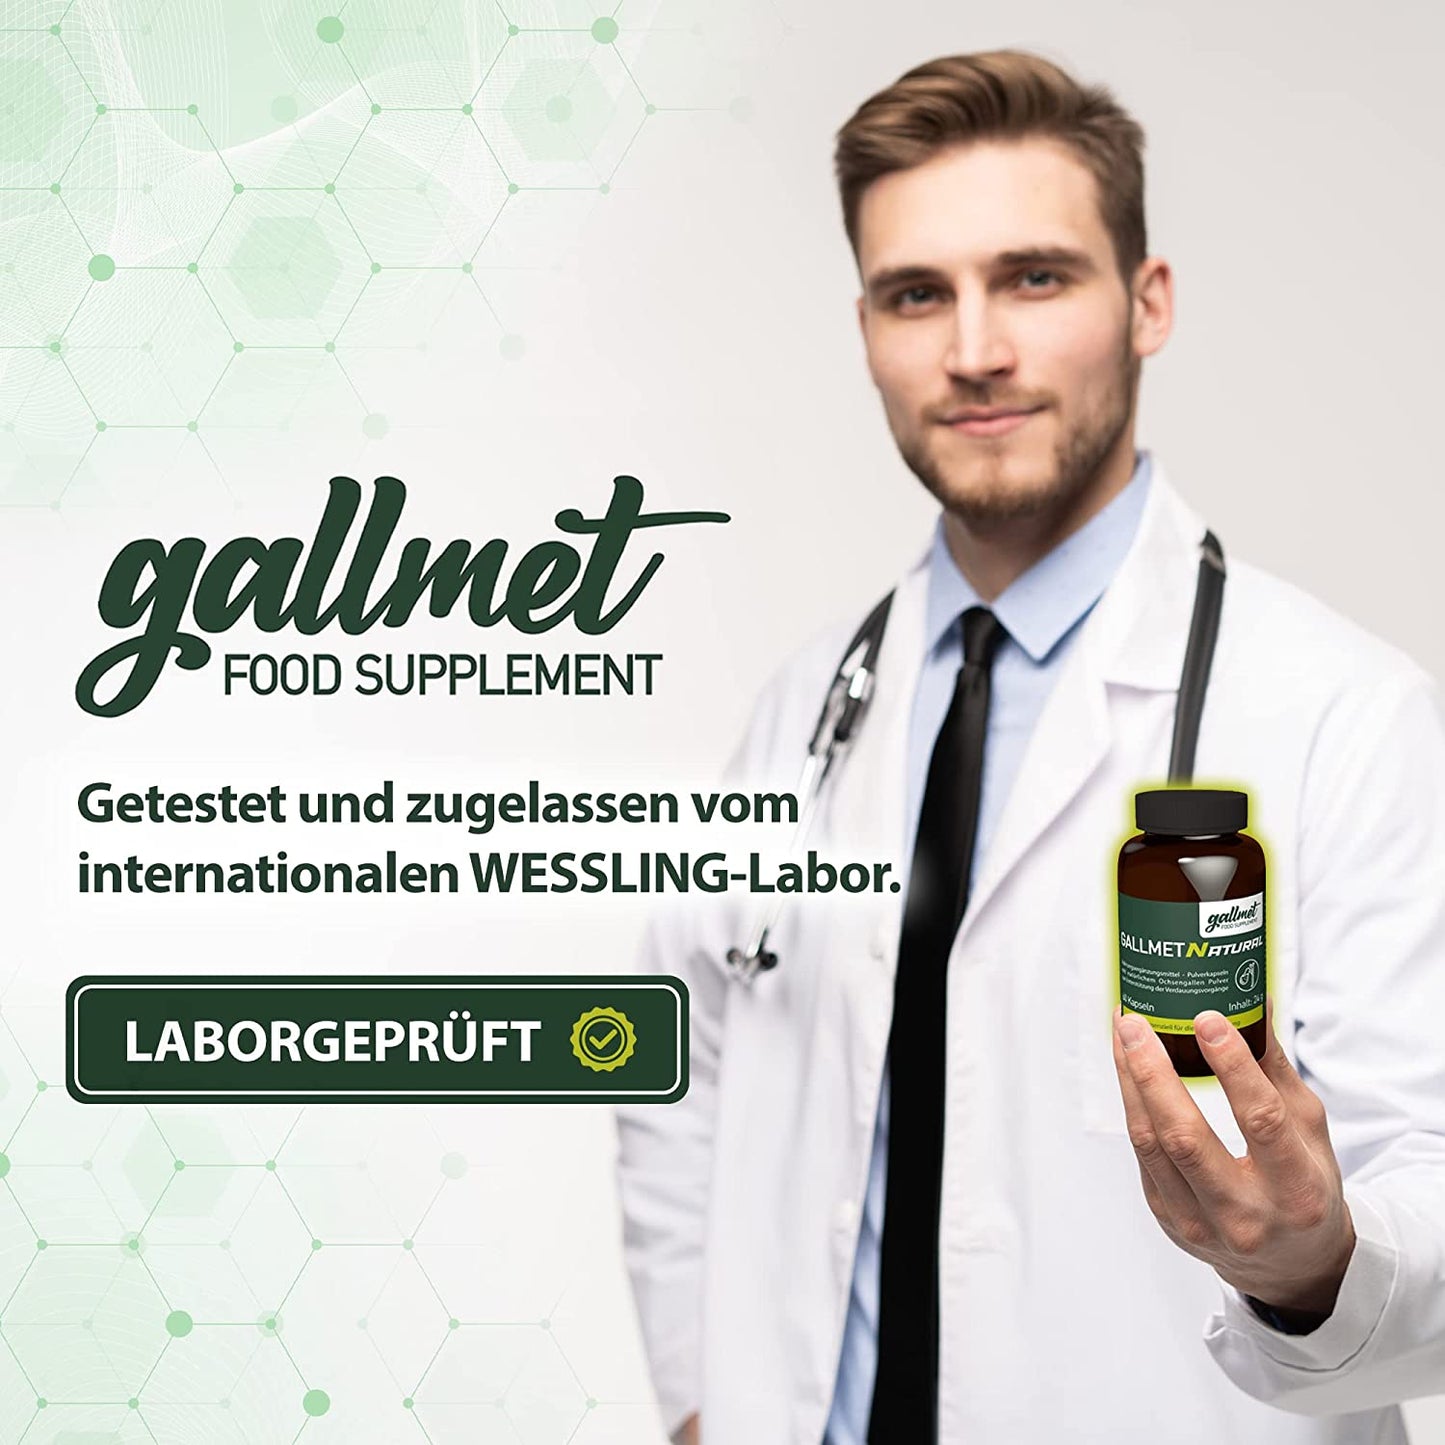 Gallmet» natural ox bile powder 60 capsules